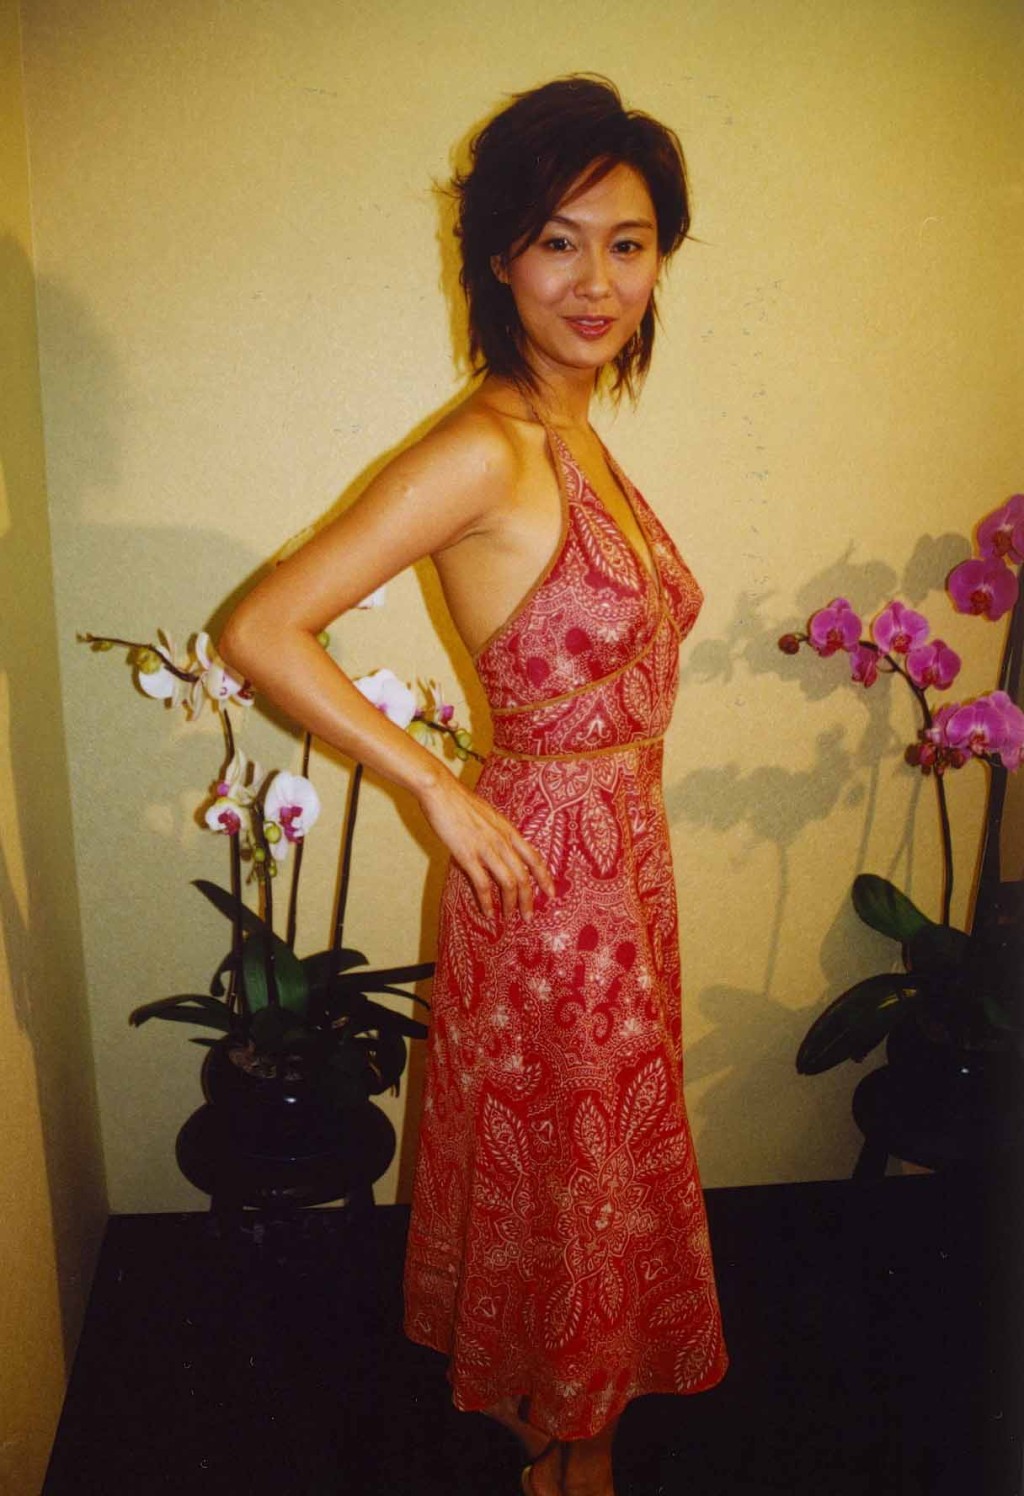 朱茵曾被赞网民评选为五官最完美香港女星。